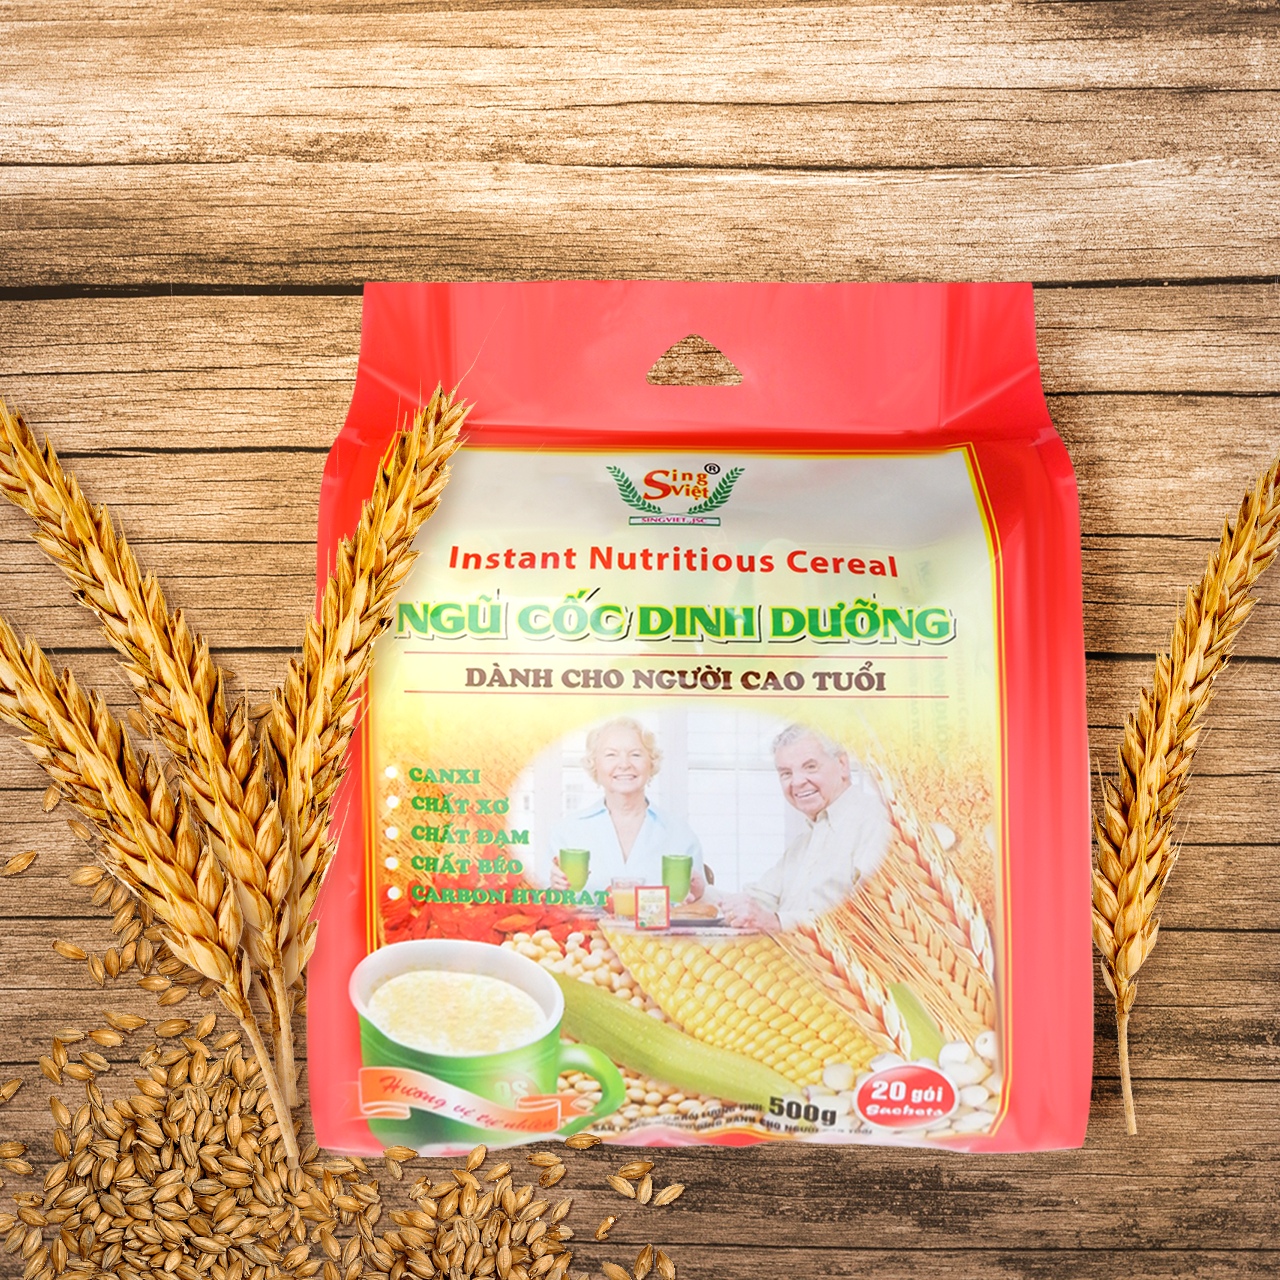 Ngũ cốc dành cho người cao tuổi Sing Việt, bổ sung tinh bột, đường, chất xơ và các chất dinh dưỡng thiết yếu